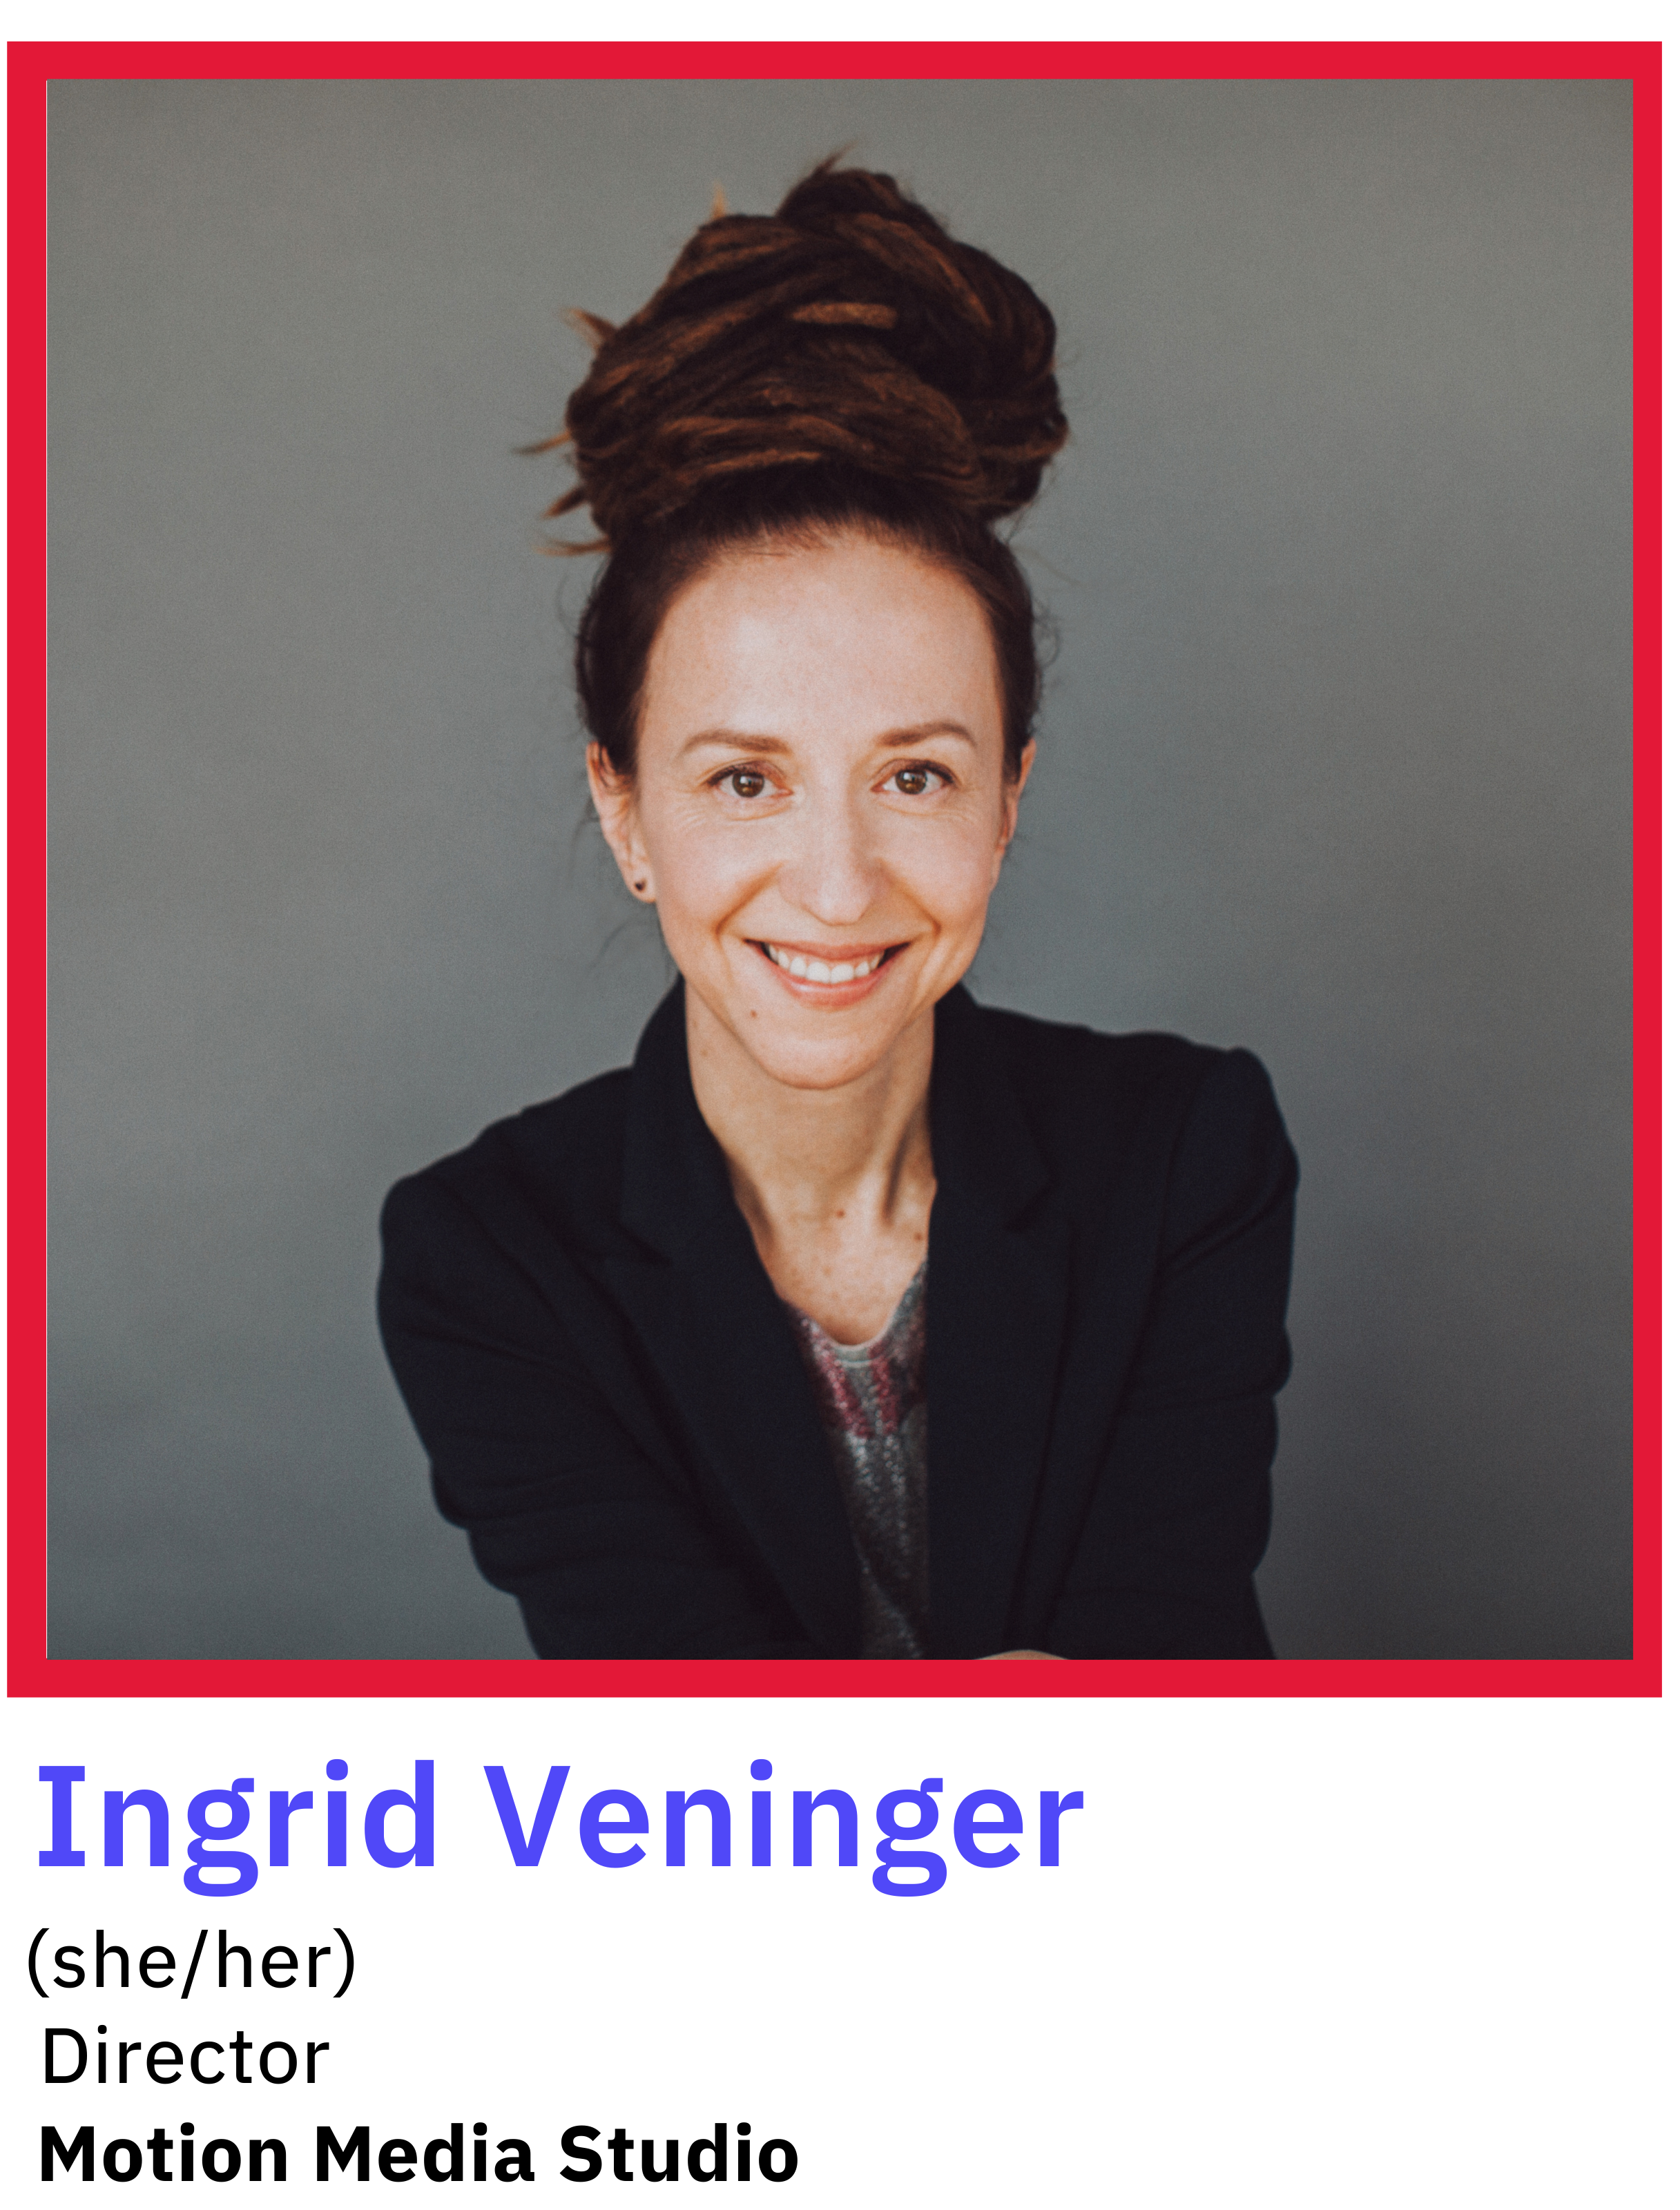 Ingrid Veninger